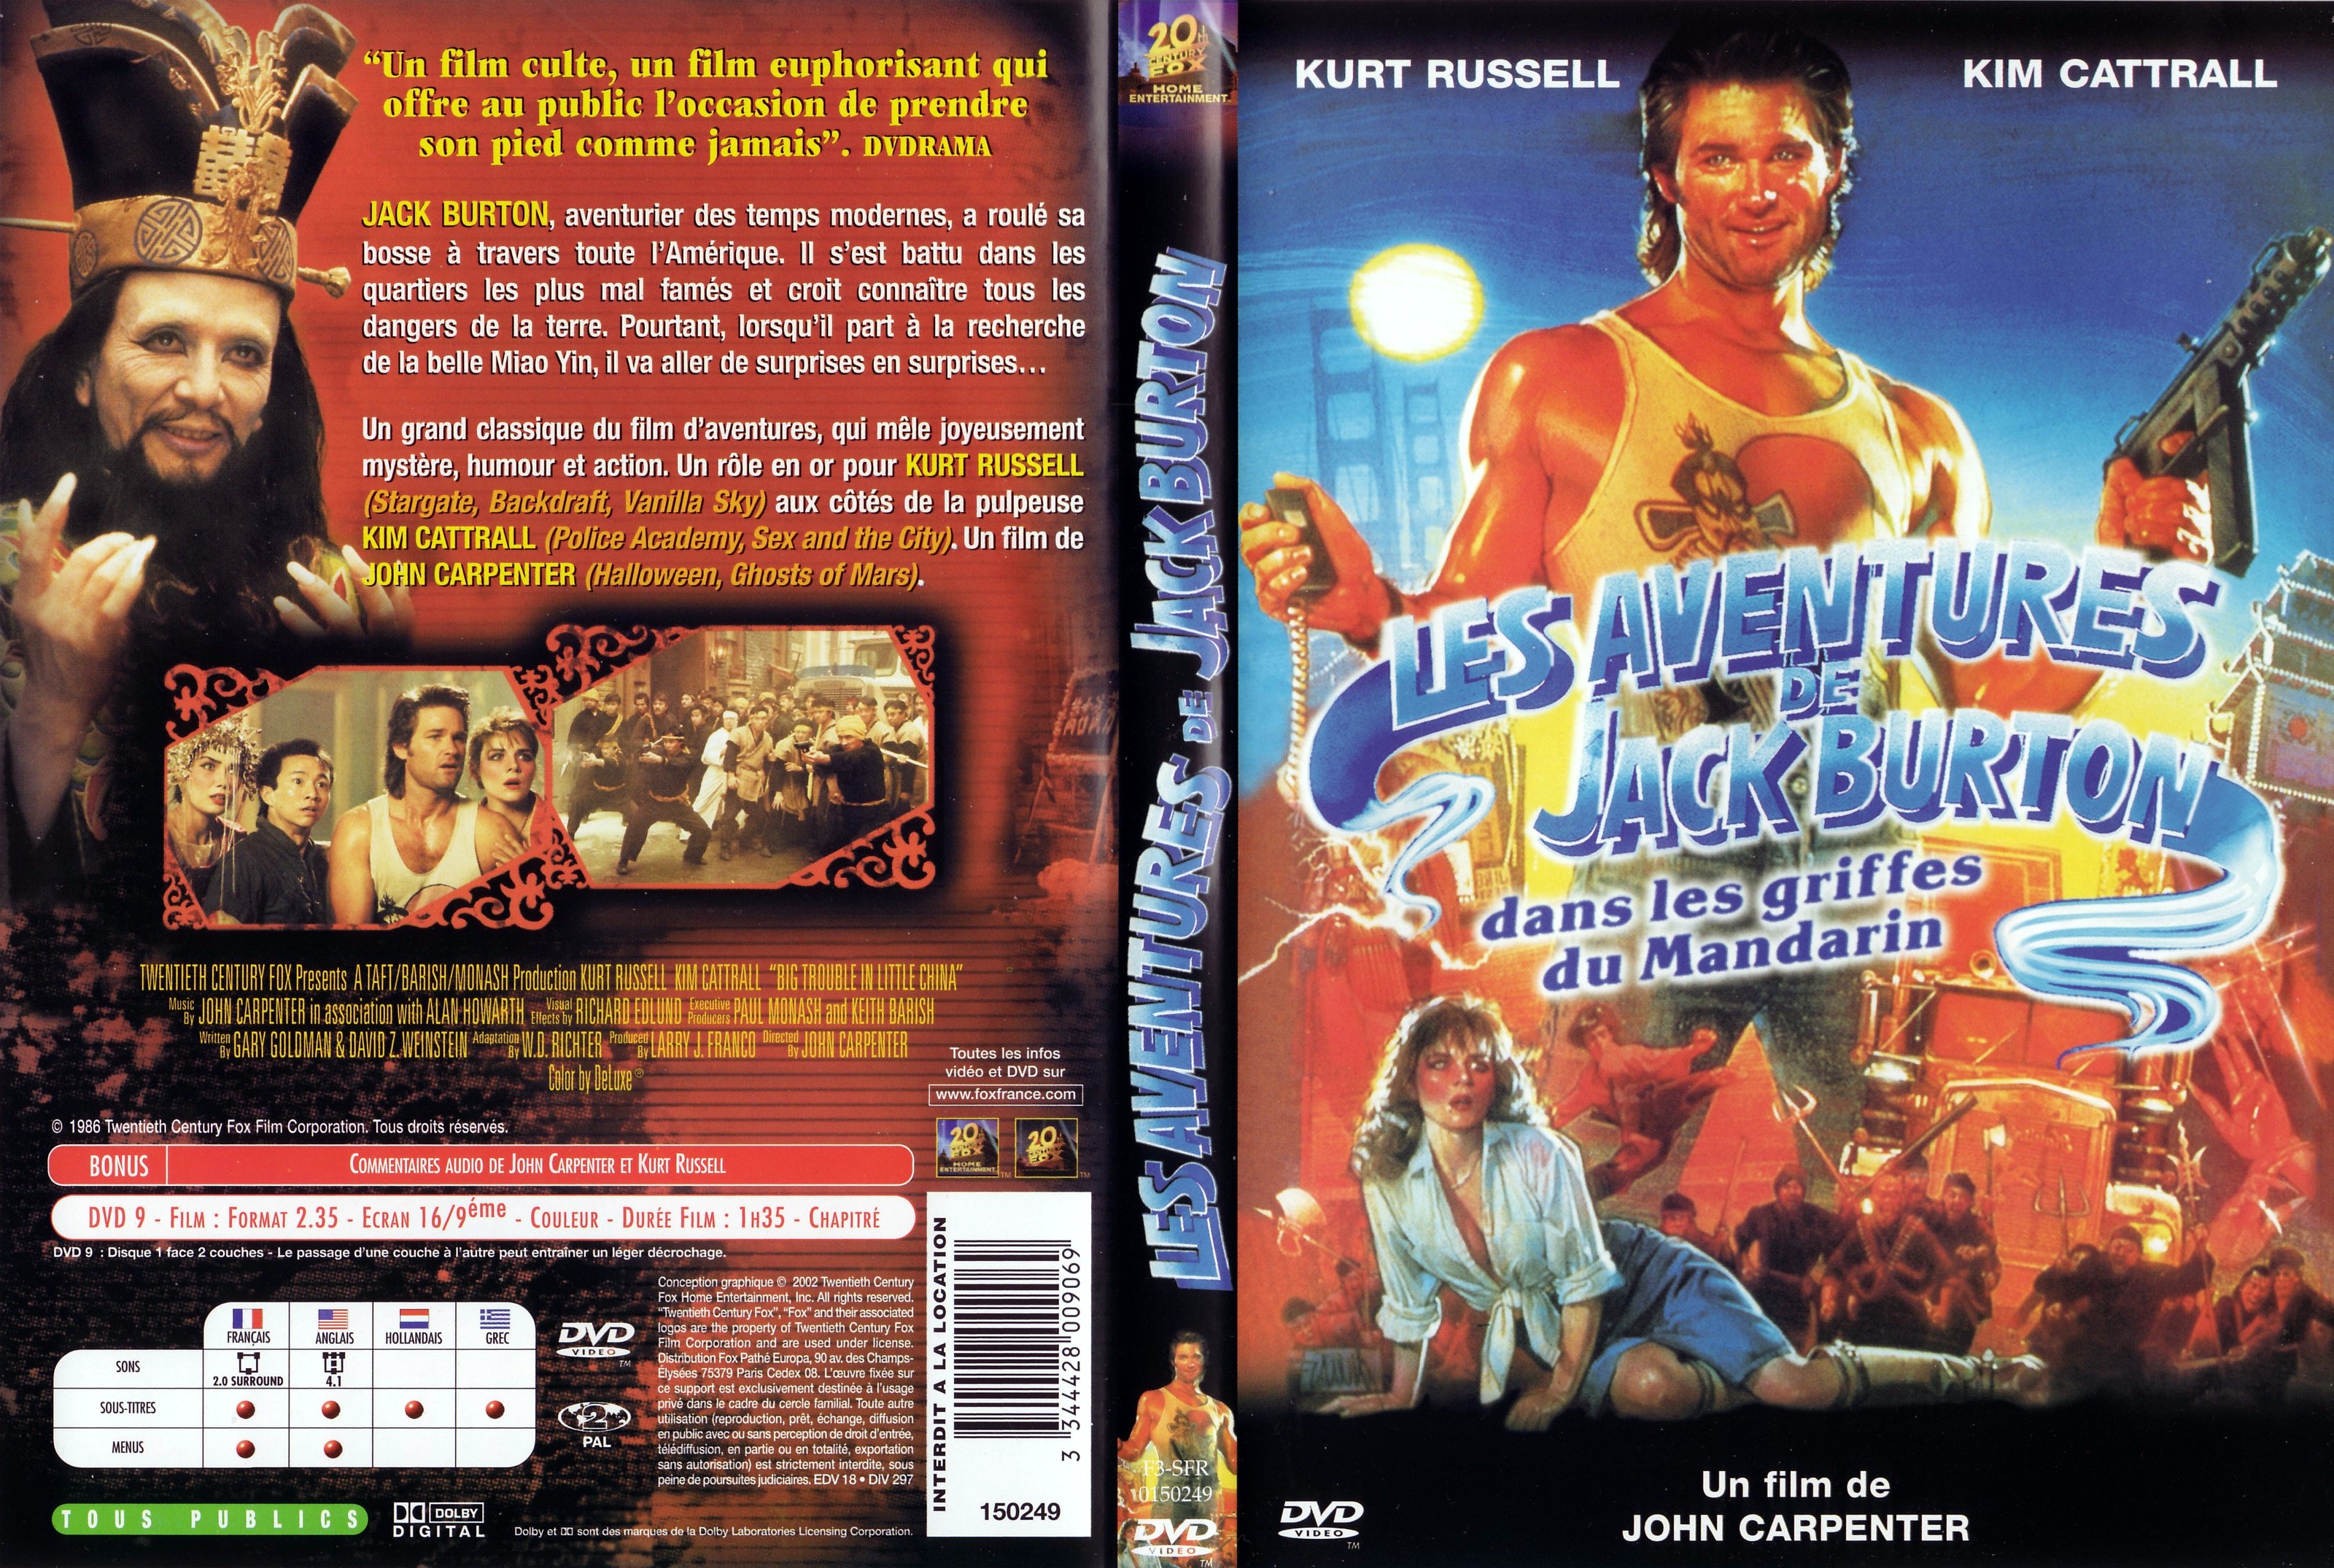 Jaquette DVD Les aventures de Jack Burton dans les griffes du mandarin v2